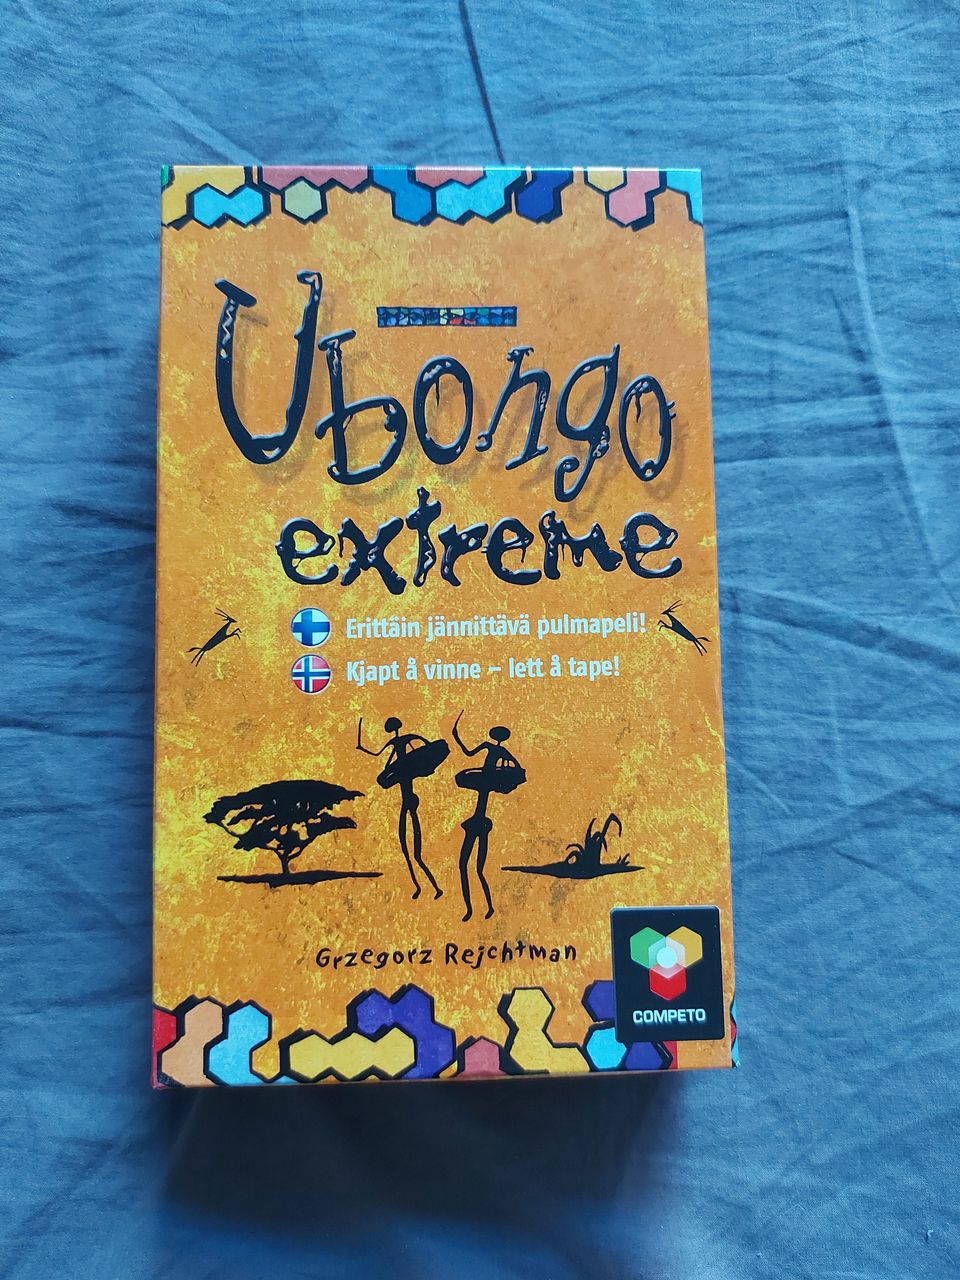 Matka Ubongo extreme